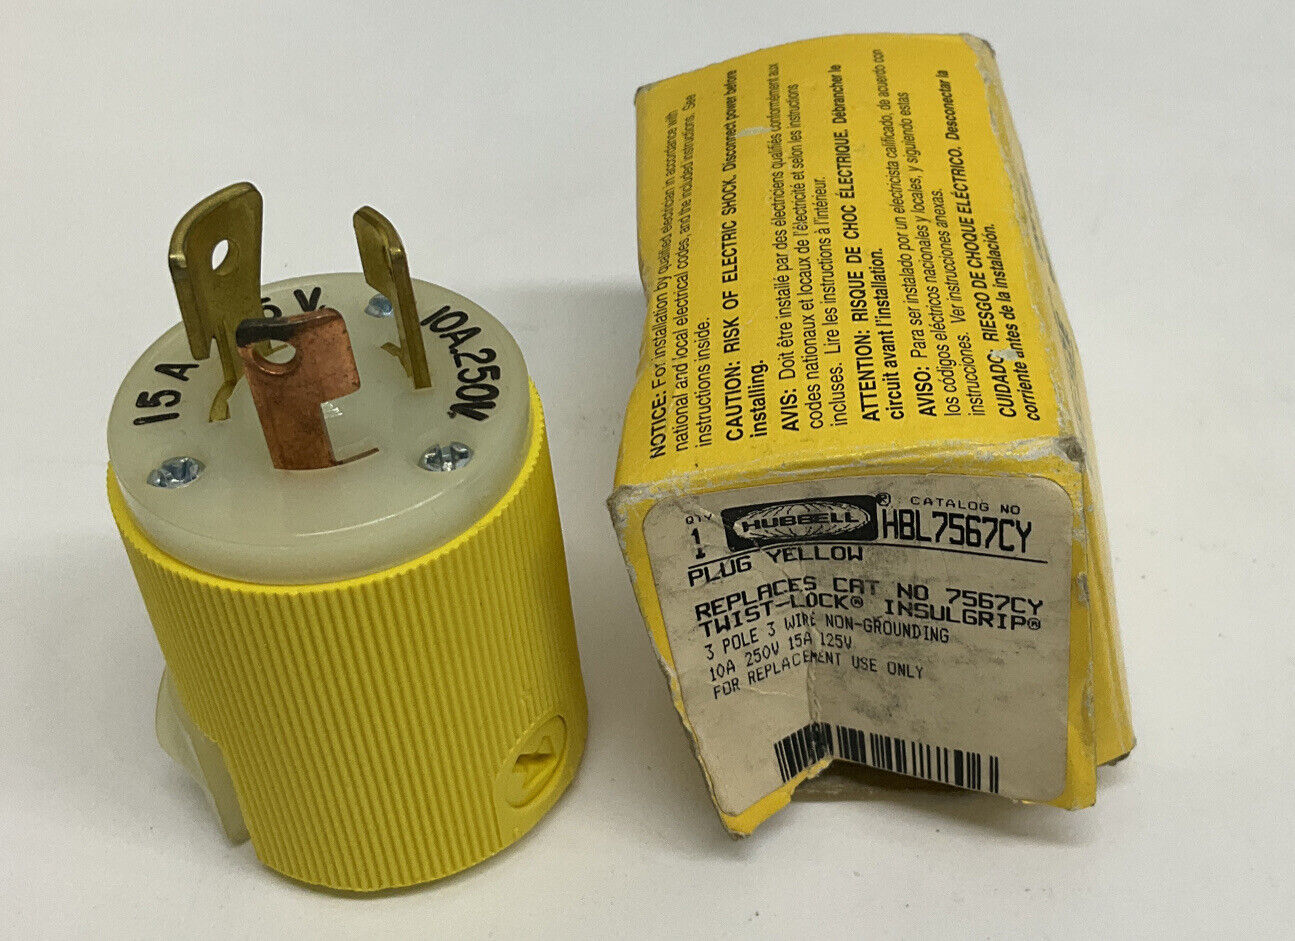 Hubbell HBL756CY / 7567CY Twist-Lock 3-Pole 3-Wire Plug (YE258)